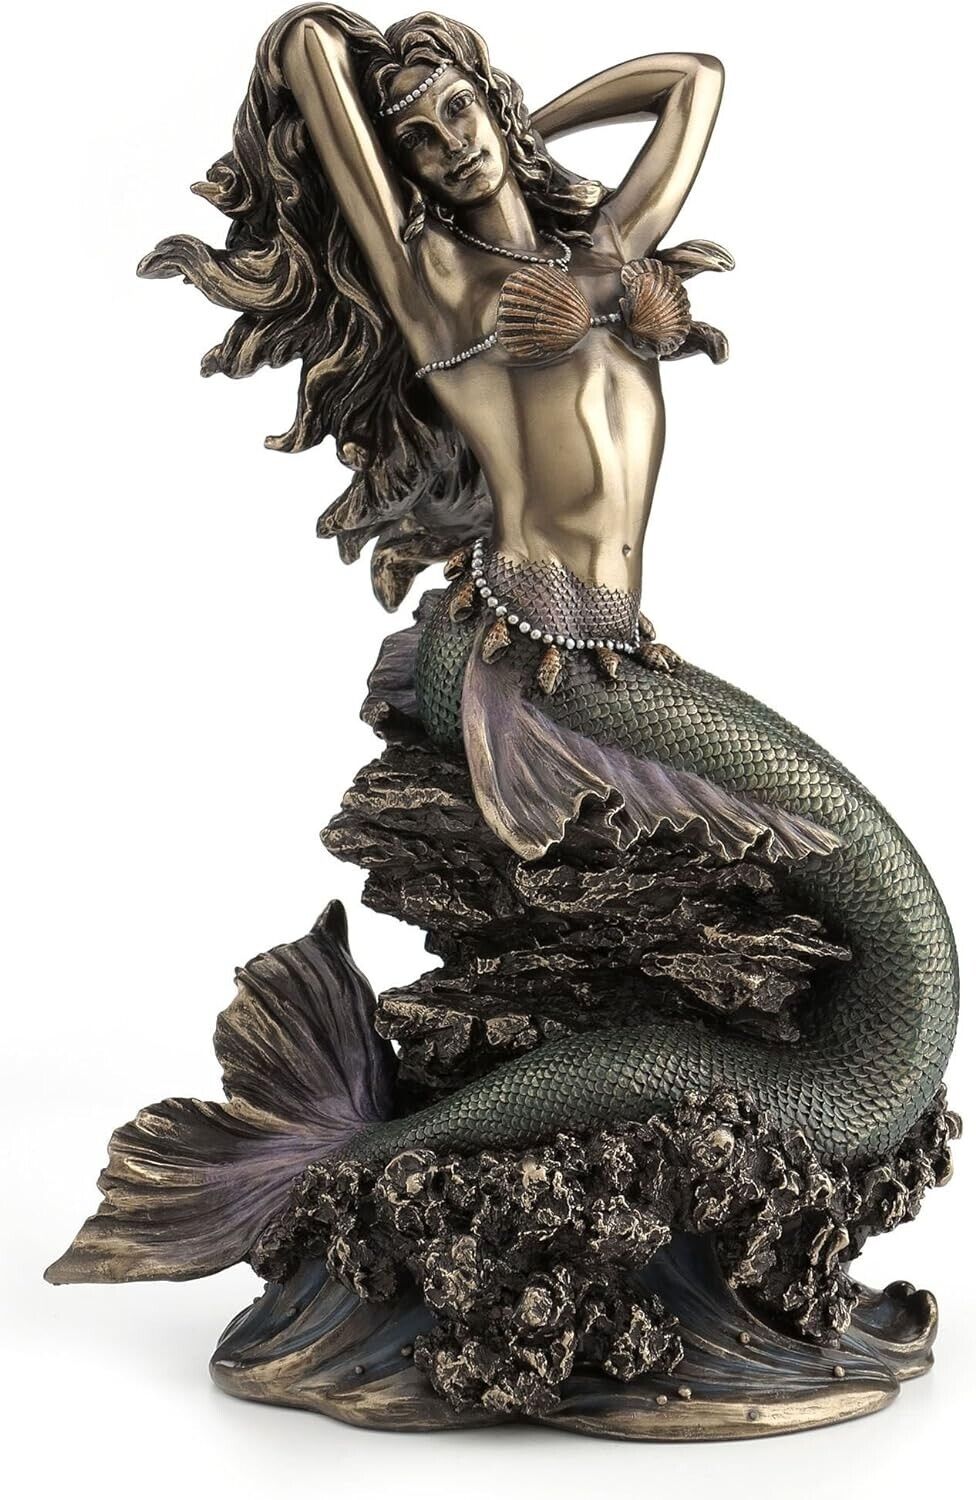 Large Beautiful Mermaid Sitting on Rock Statue Sculpture Figurine